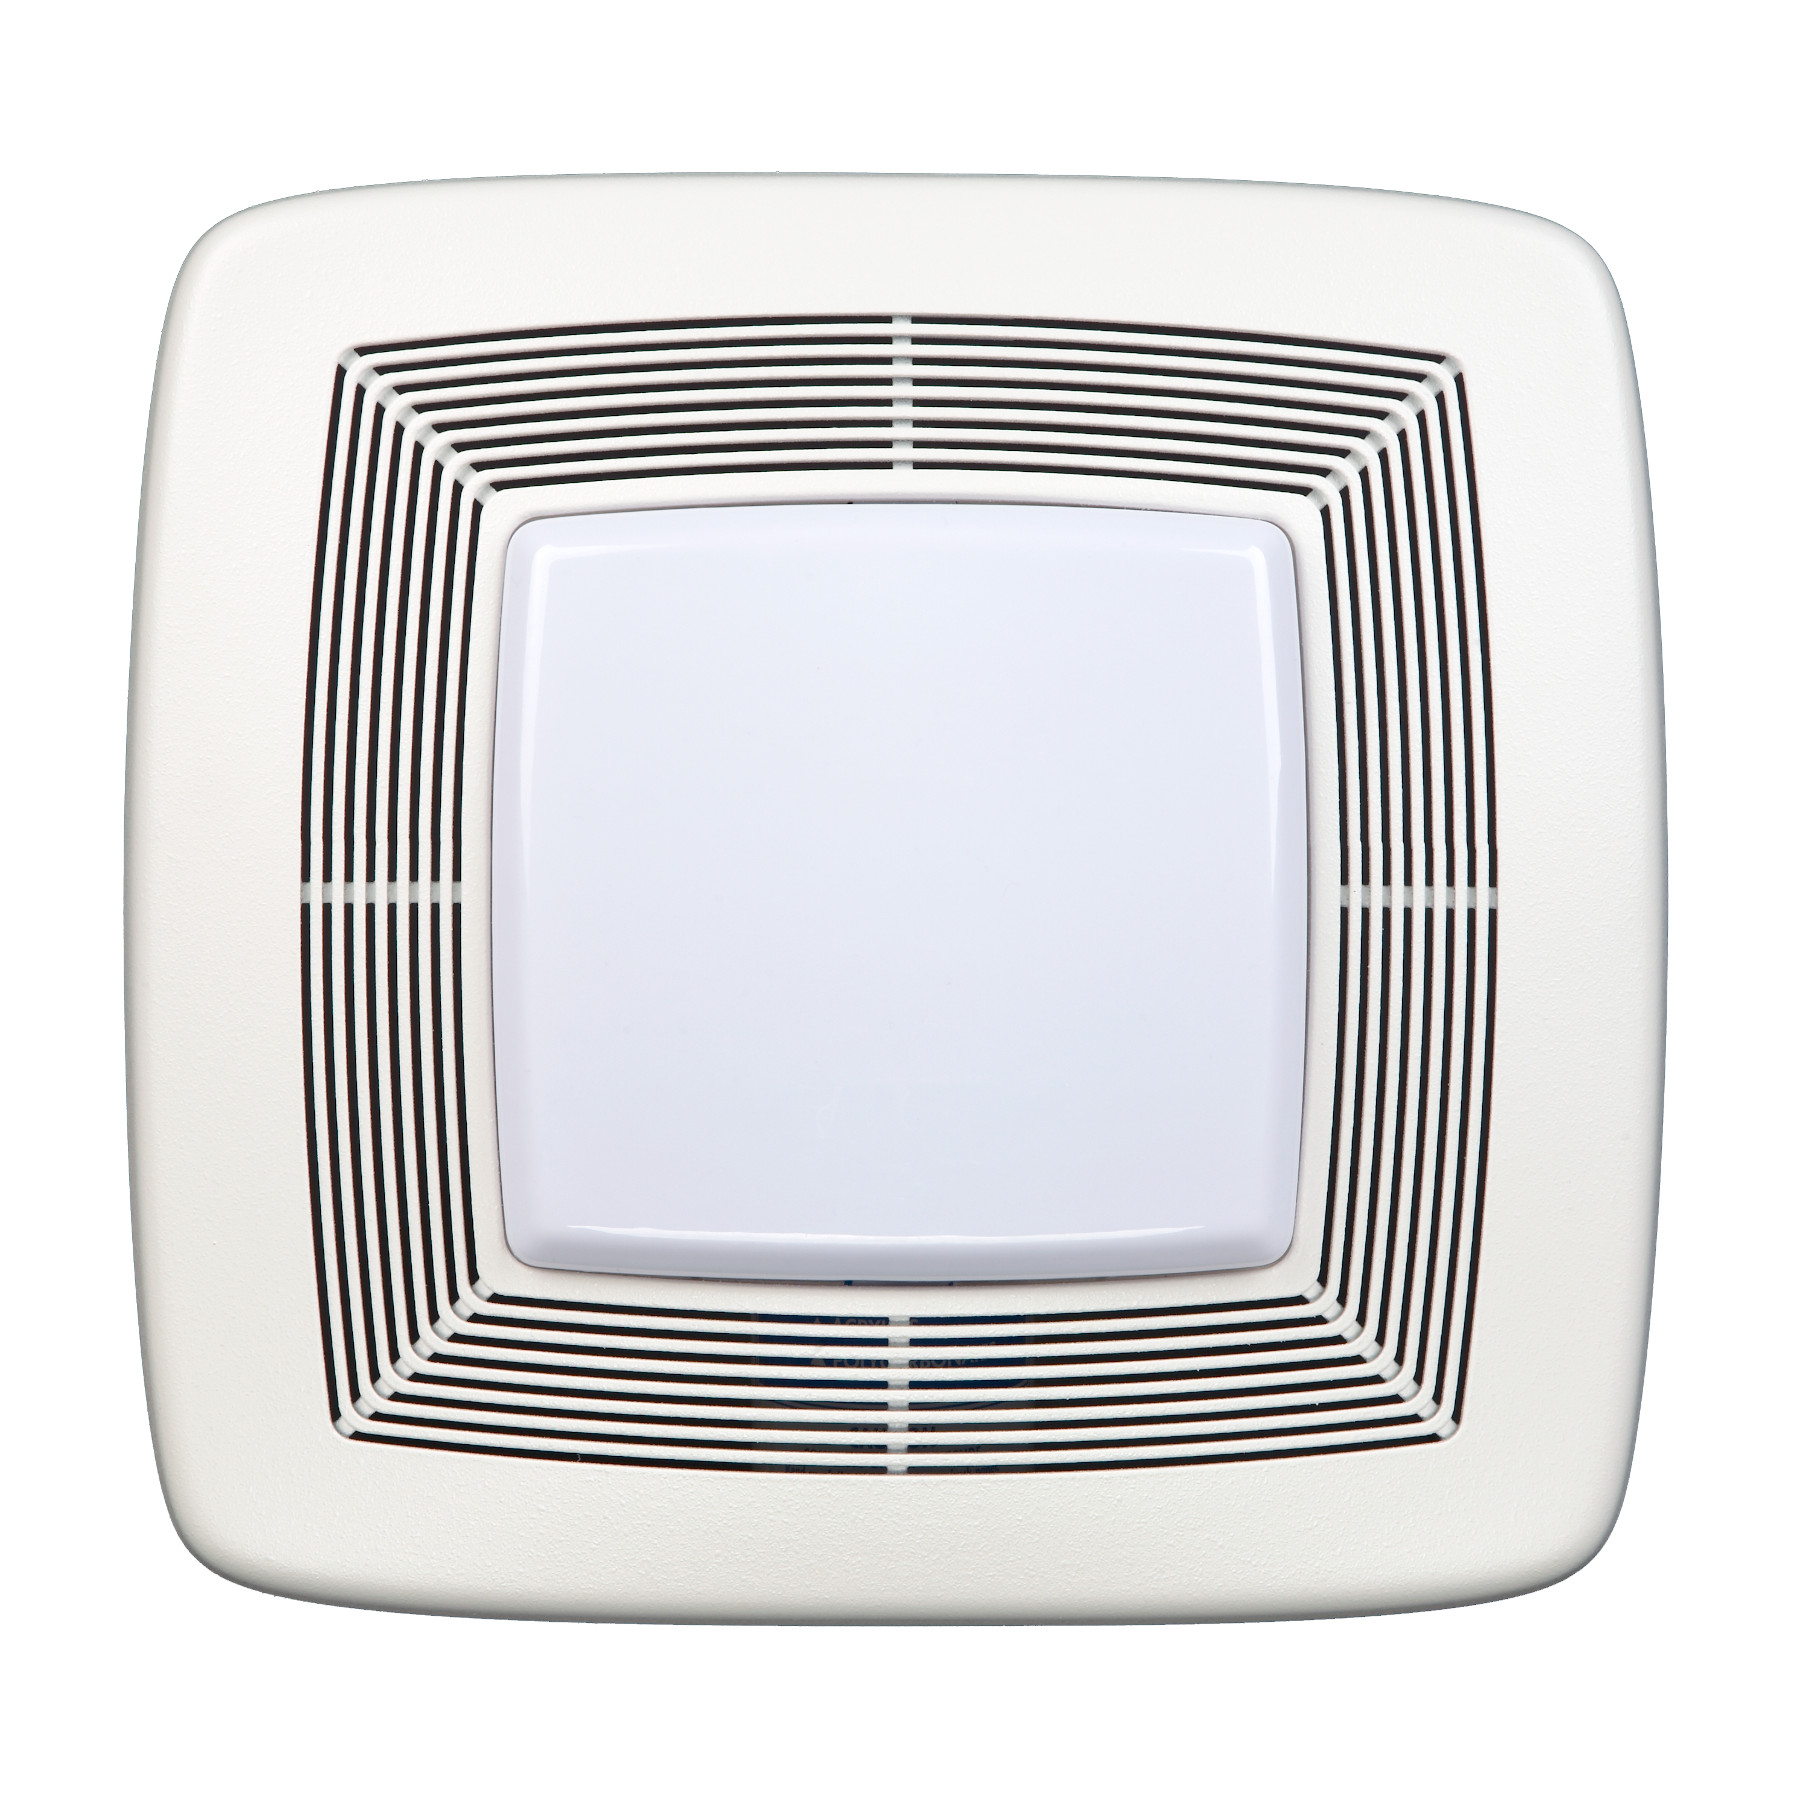 Broan 130 Cfm Ventilation Fan